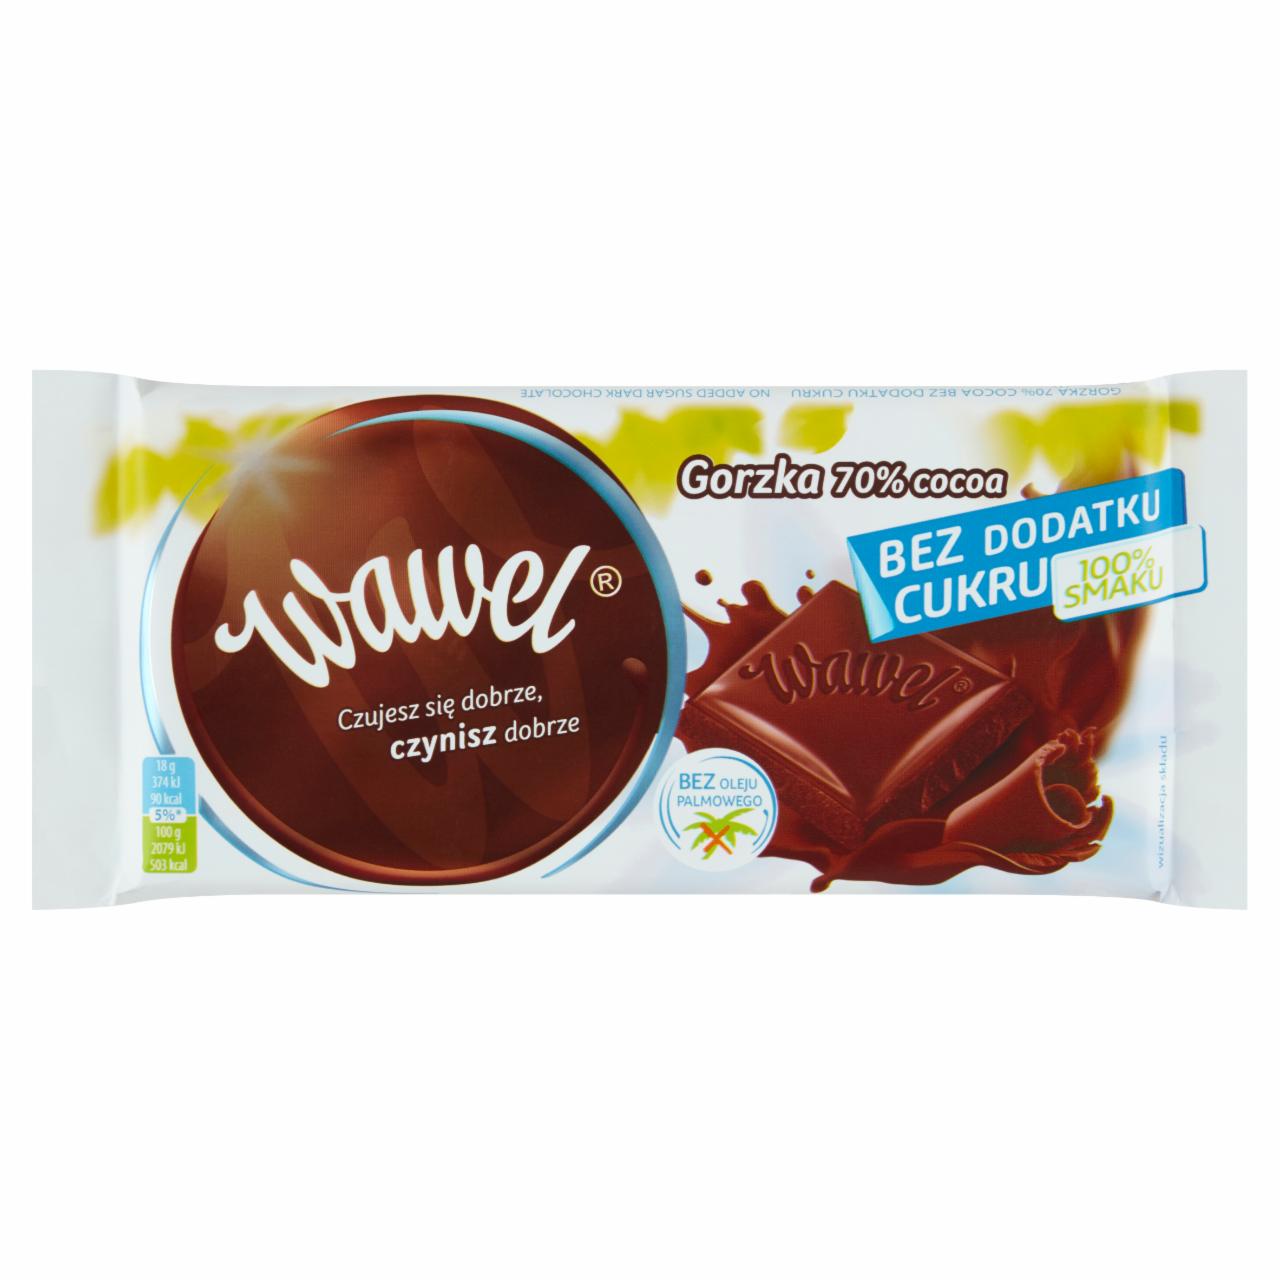 Zdjęcia - Wawel Czekolada gorzka 70 % Cocoa bez dodatku cukru 90 g